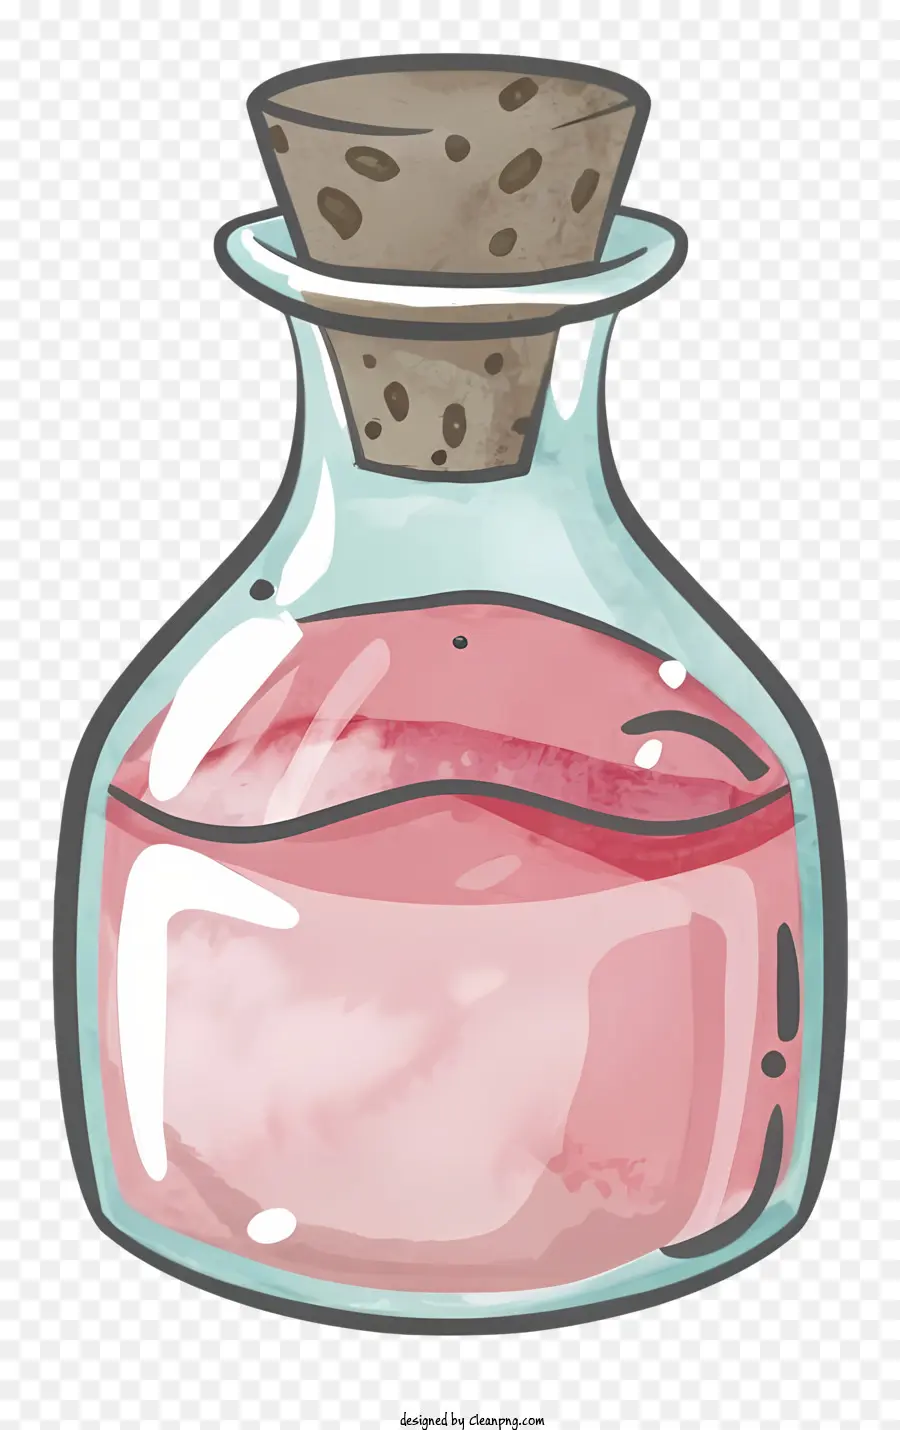 Chai thủy tinh hoạt hình Chai chai màu hồng trong suốt chai có nút chặn - Clear Glass Chai có chất lỏng màu hồng bên trong